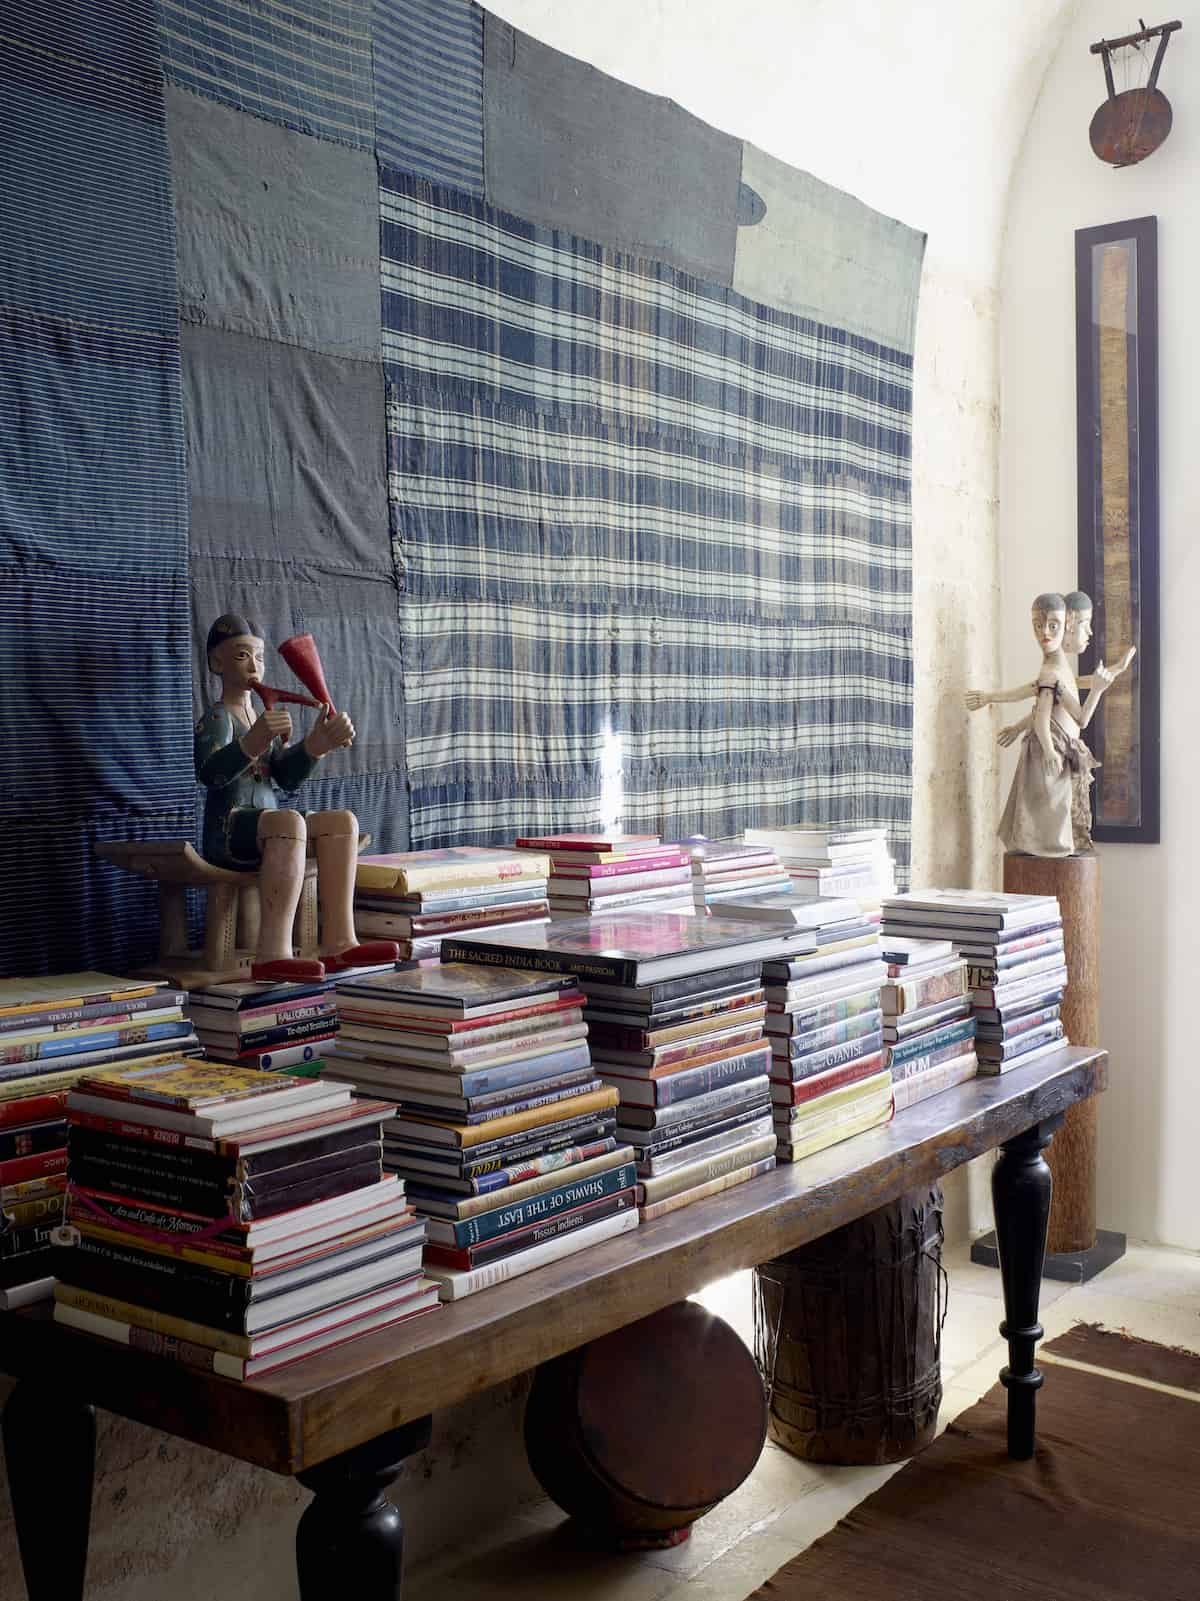 Il Convento, Puglia is home to McAlpine's 14 tonnes of books.